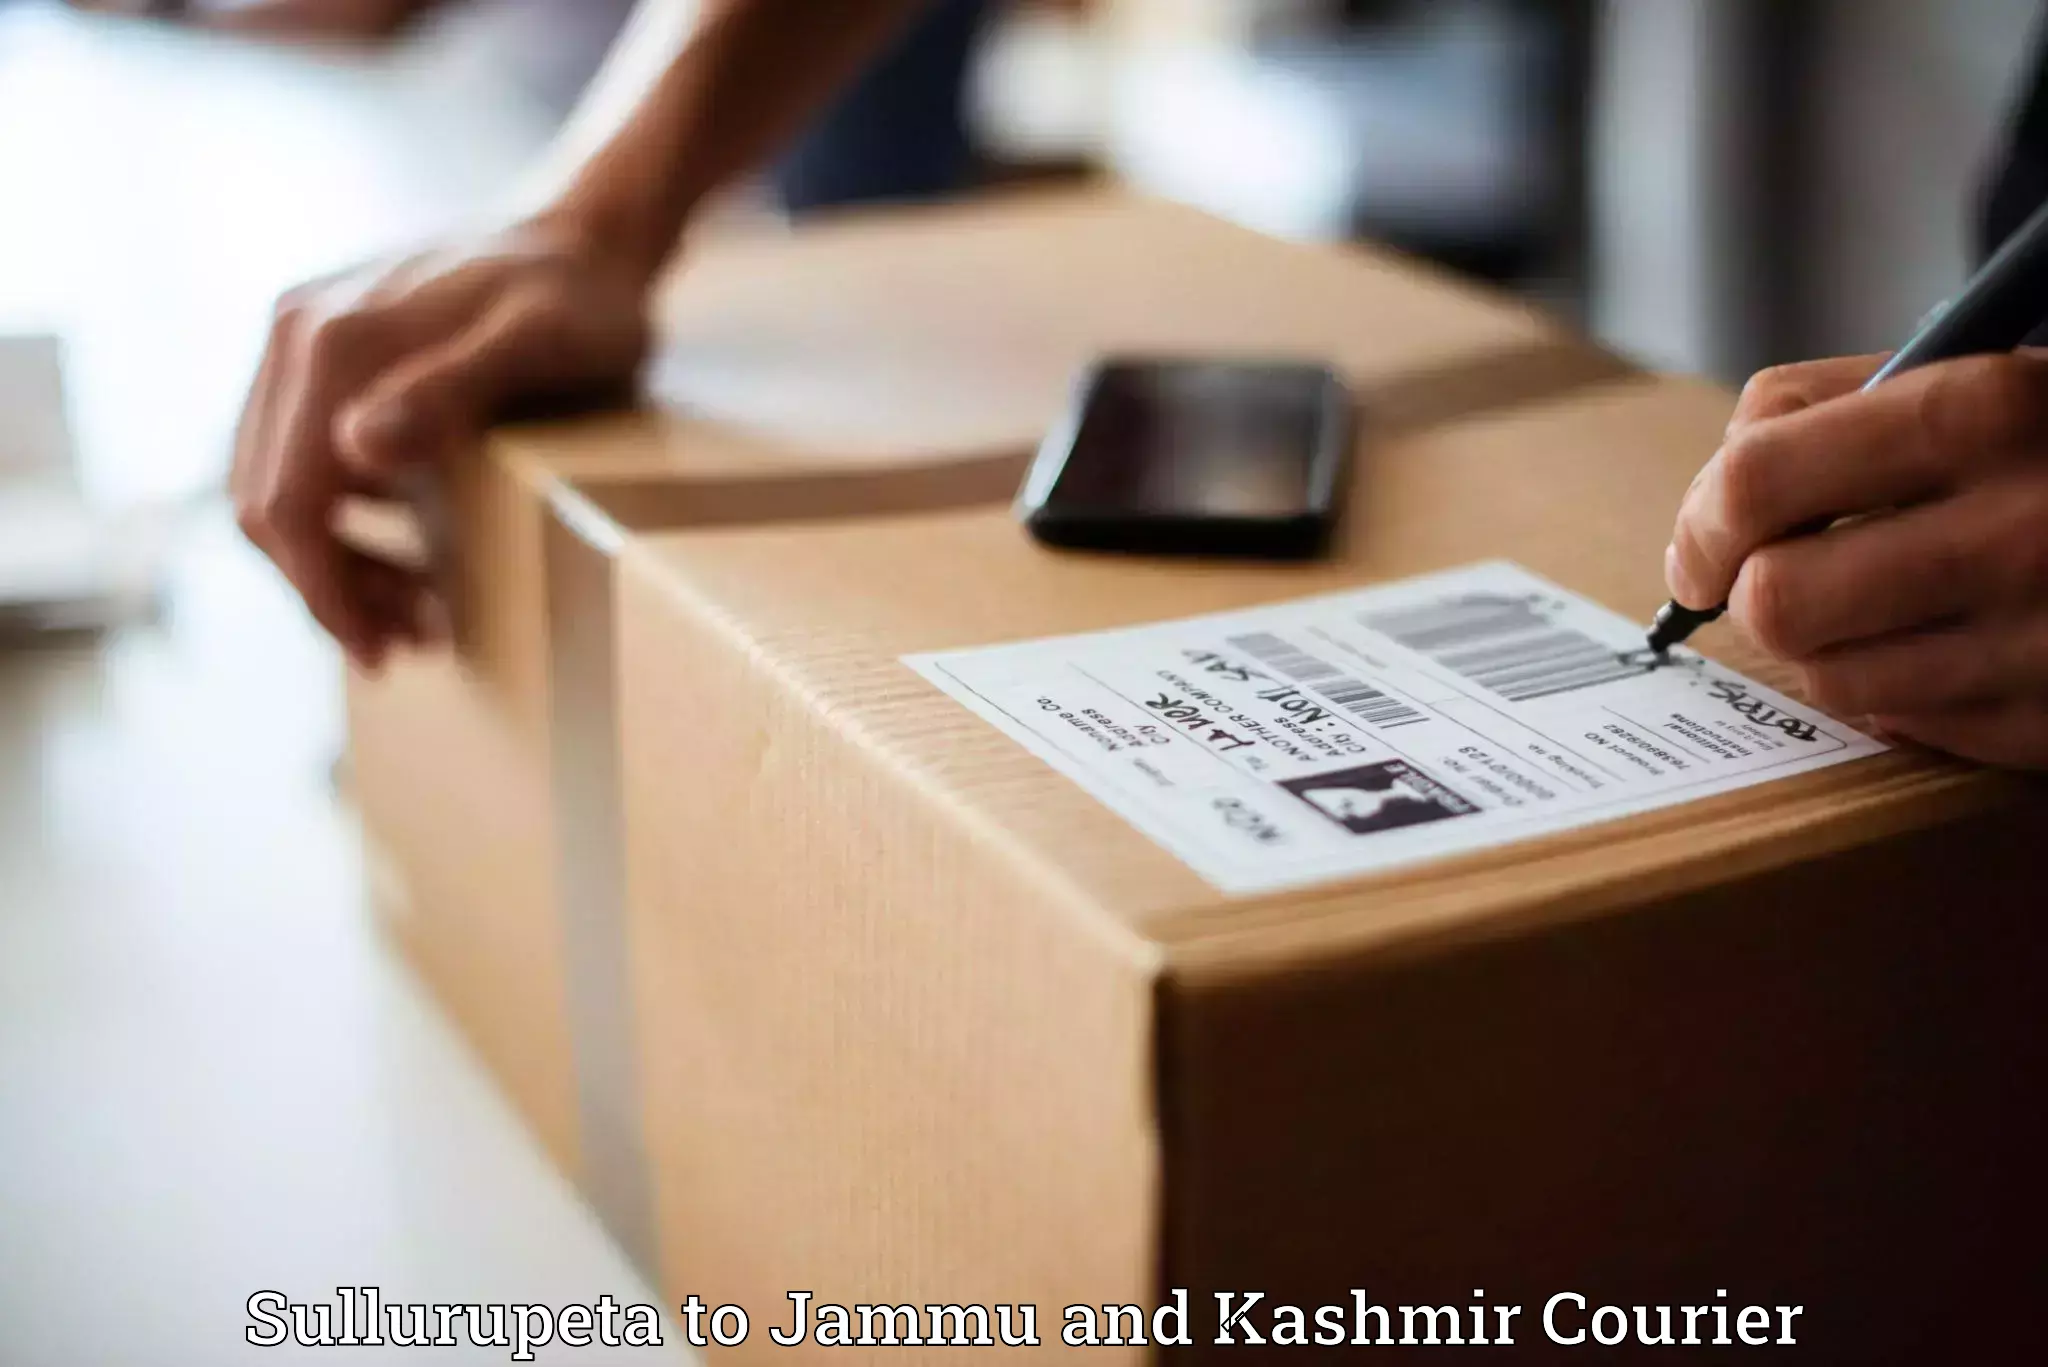 Trackable shipping service Sullurupeta to Jammu and Kashmir